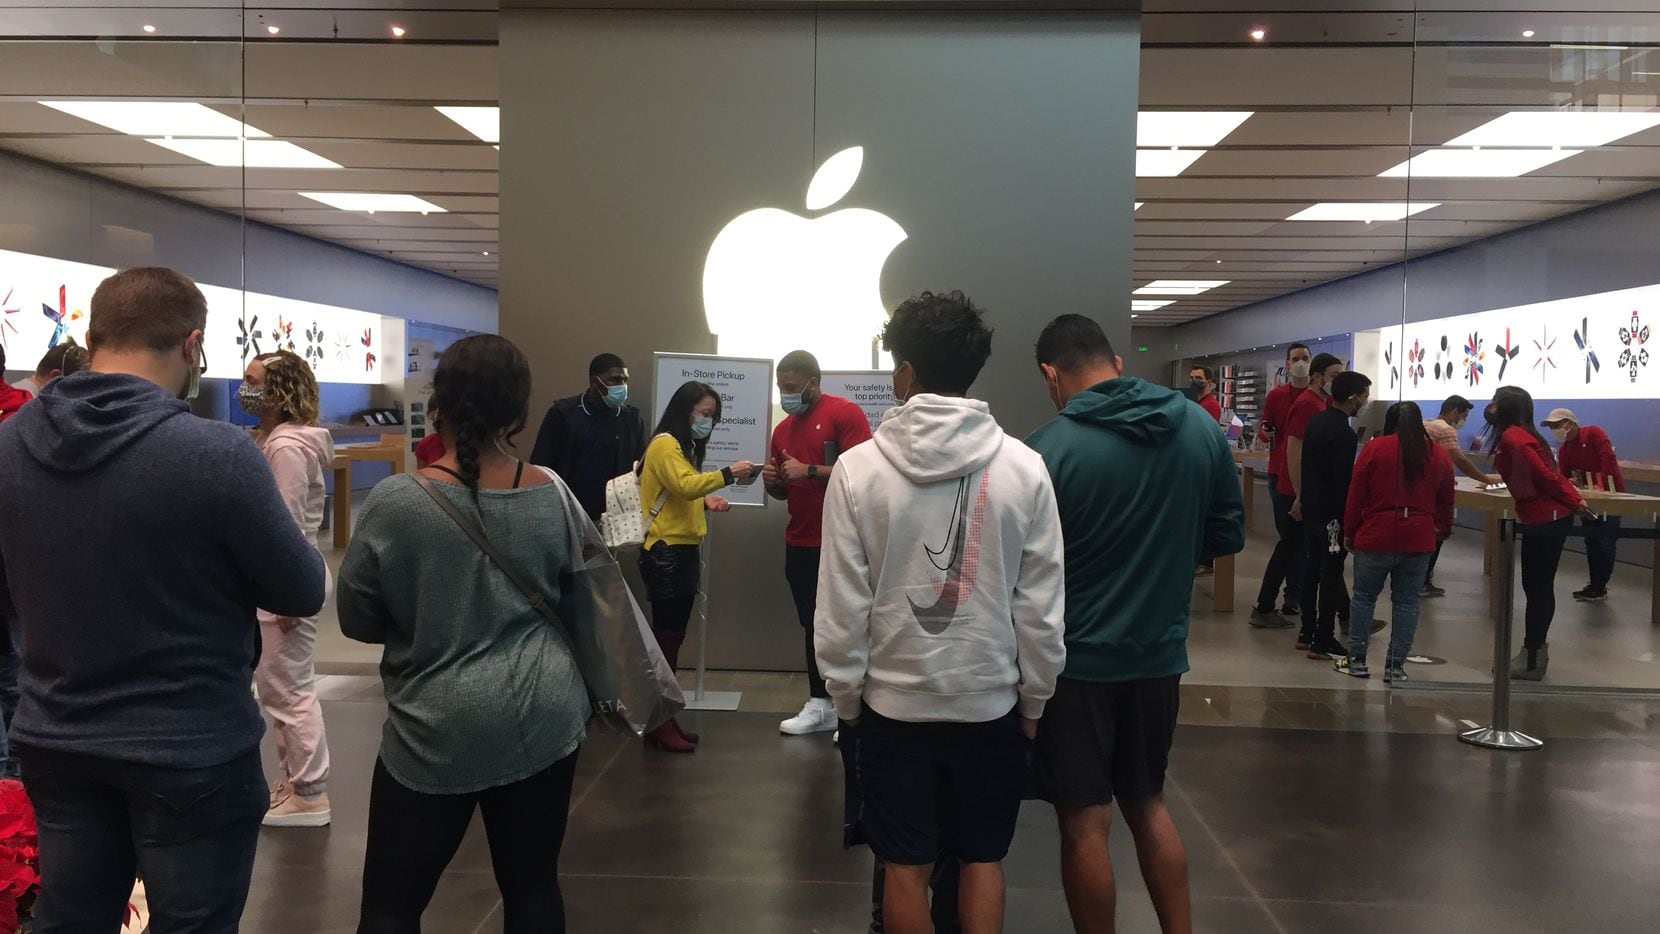 La tienda de Apple en NorthPark Center no está abierta al público, al igual que otras...